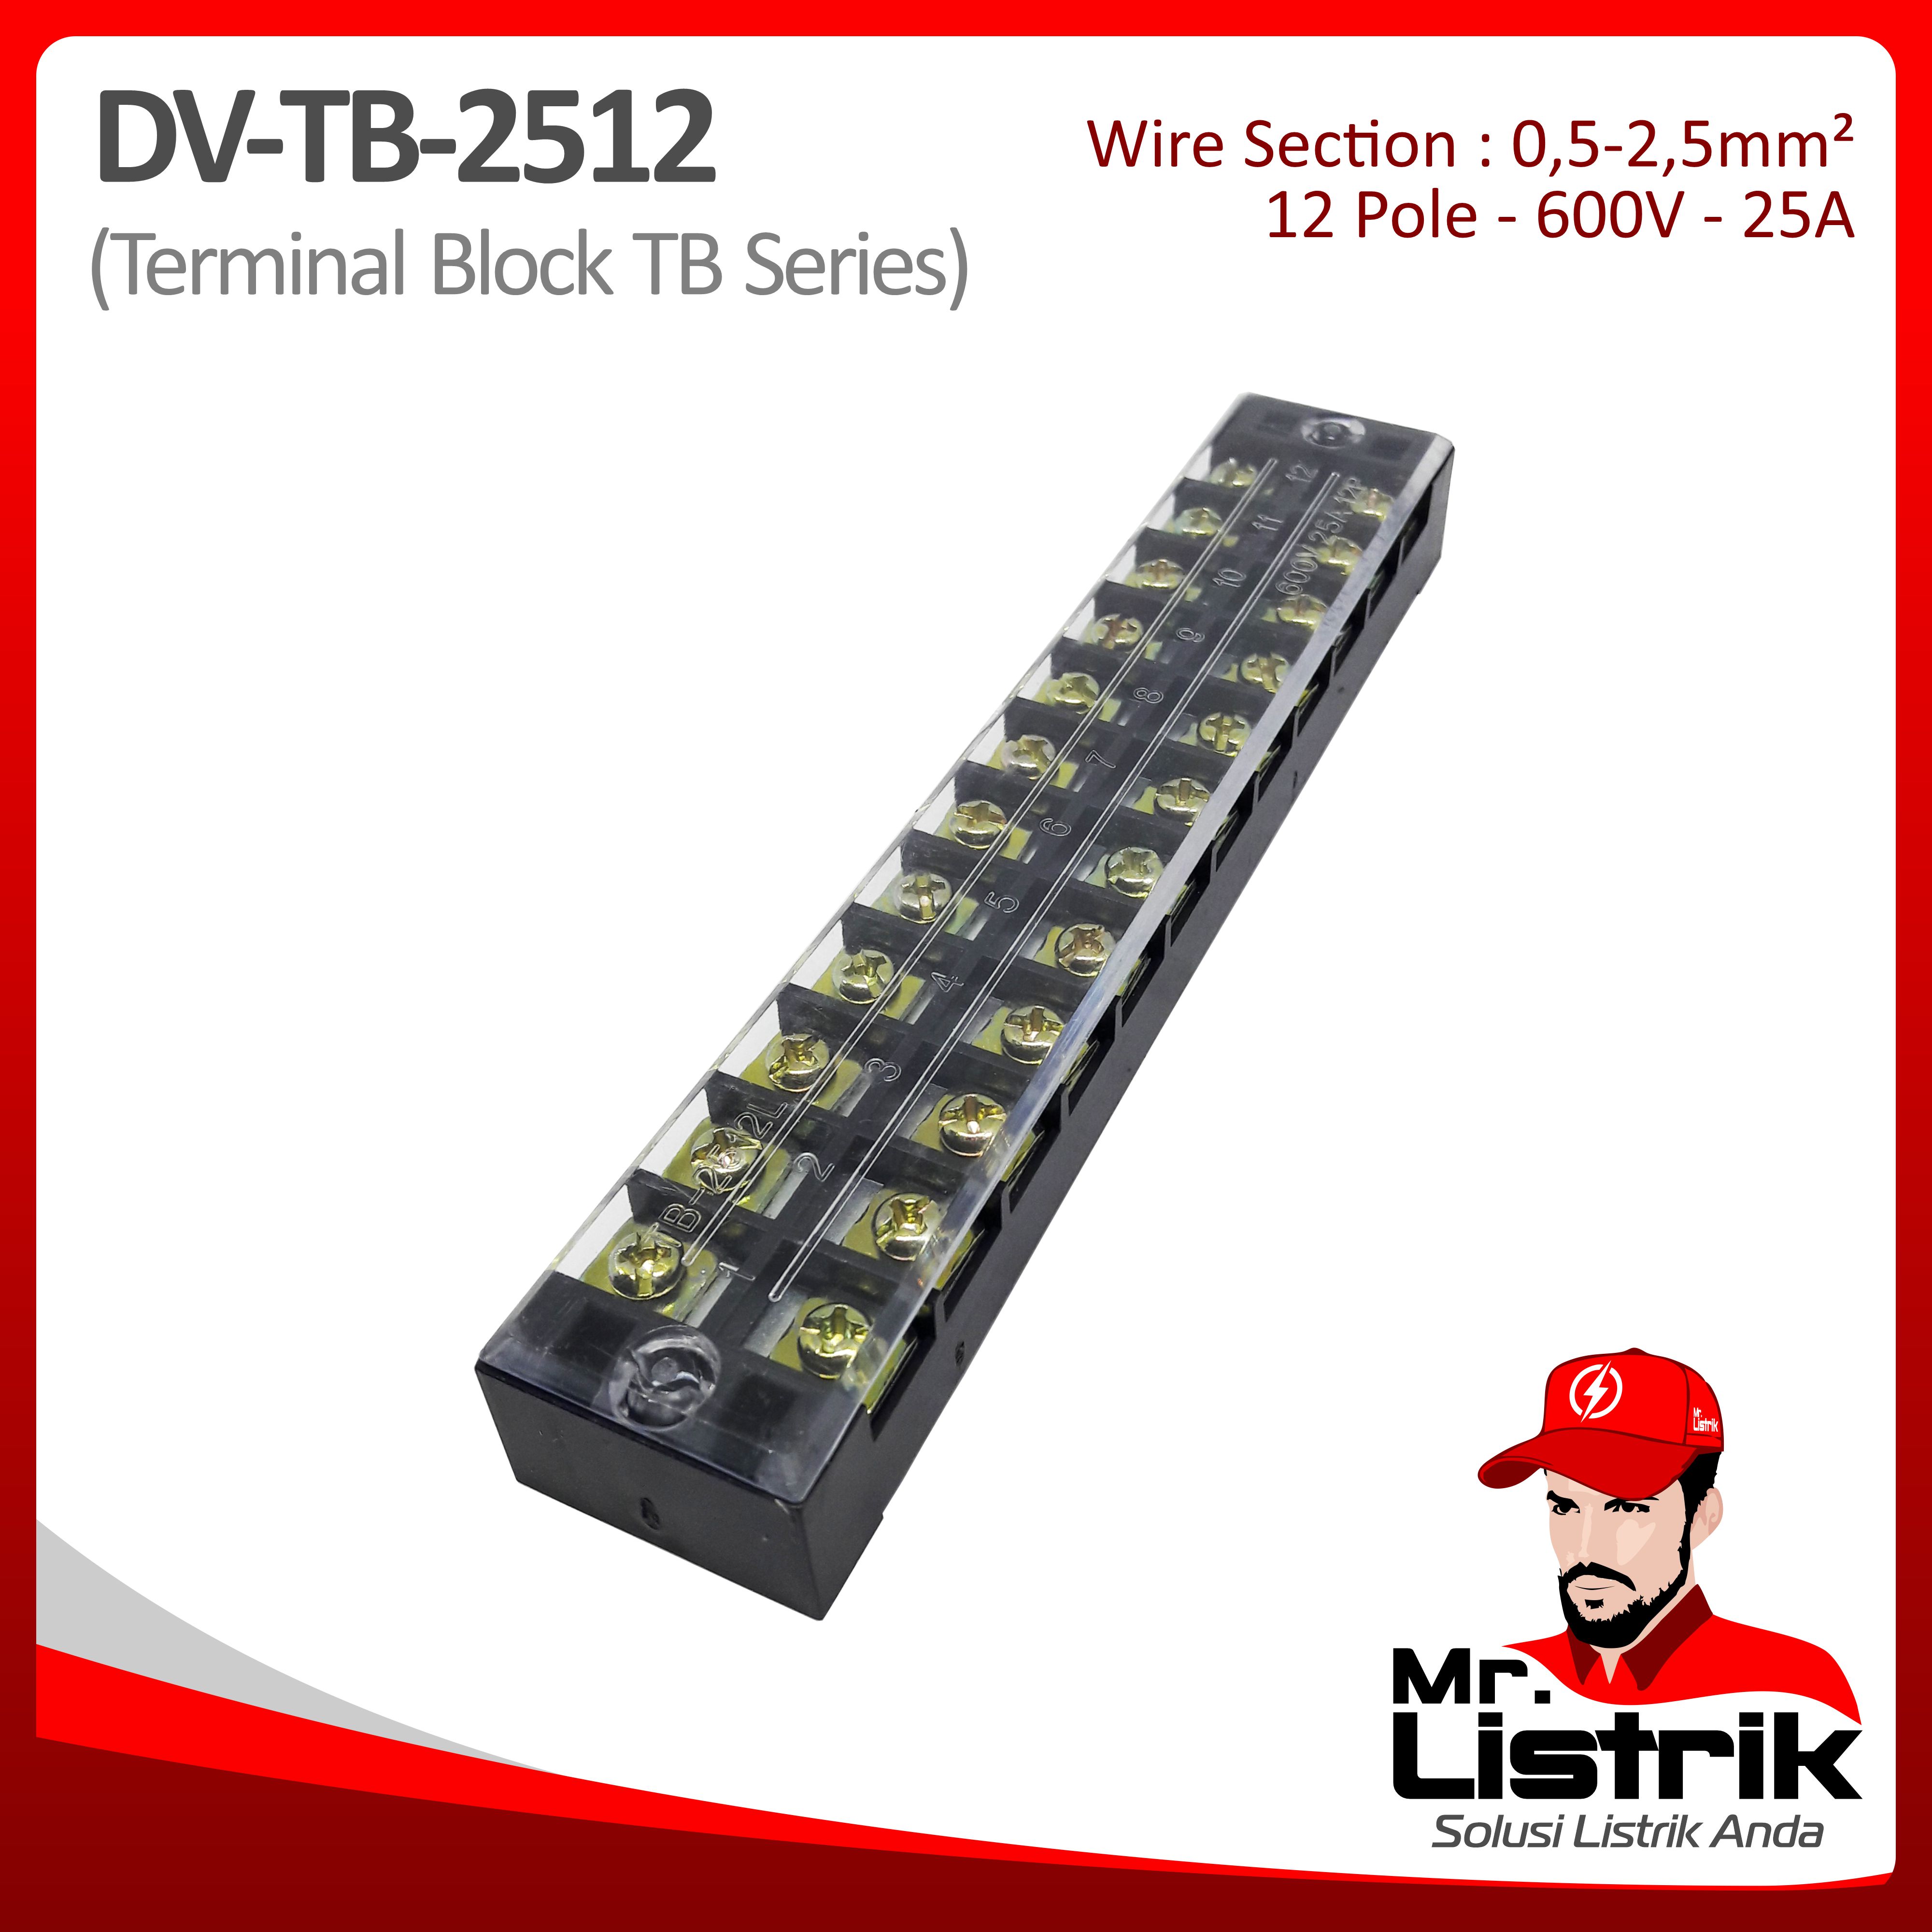 Terminal Block TB Series 12P 25A DV TB-2512